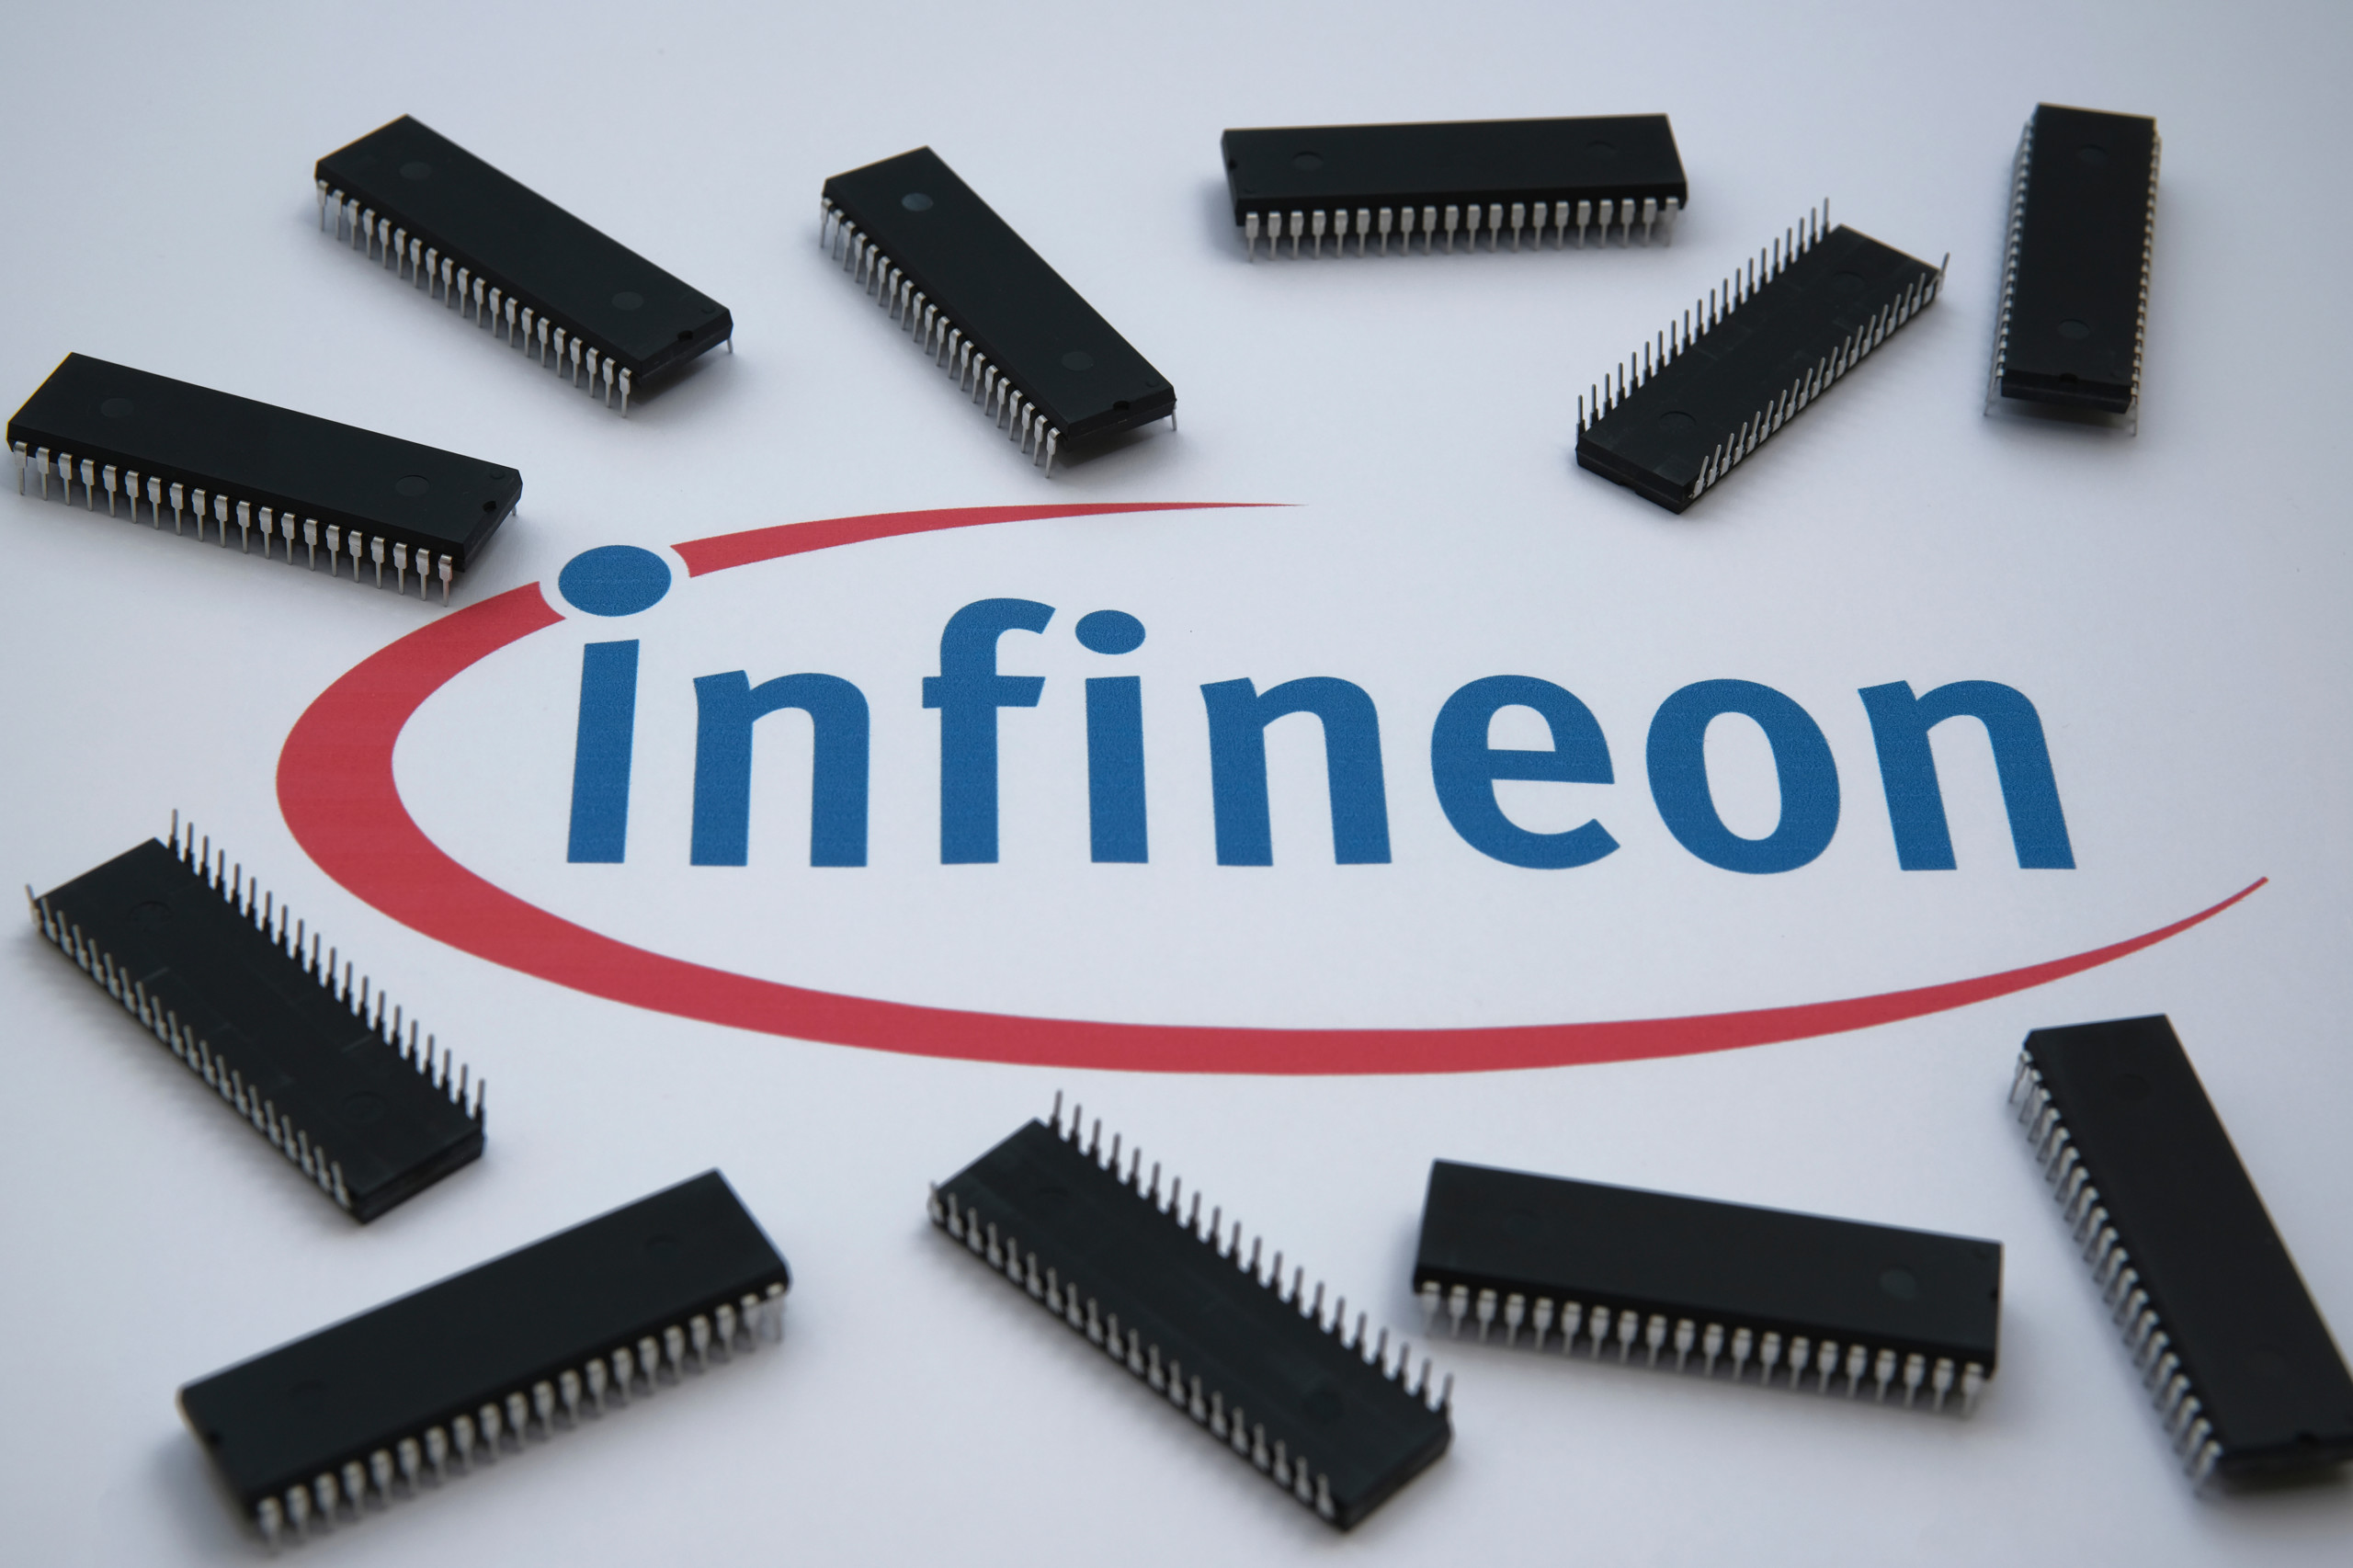 Infineon senkt Chip-Umsatzprognose angesichts schwacher Nachfrage nach Unterhaltungselektronik